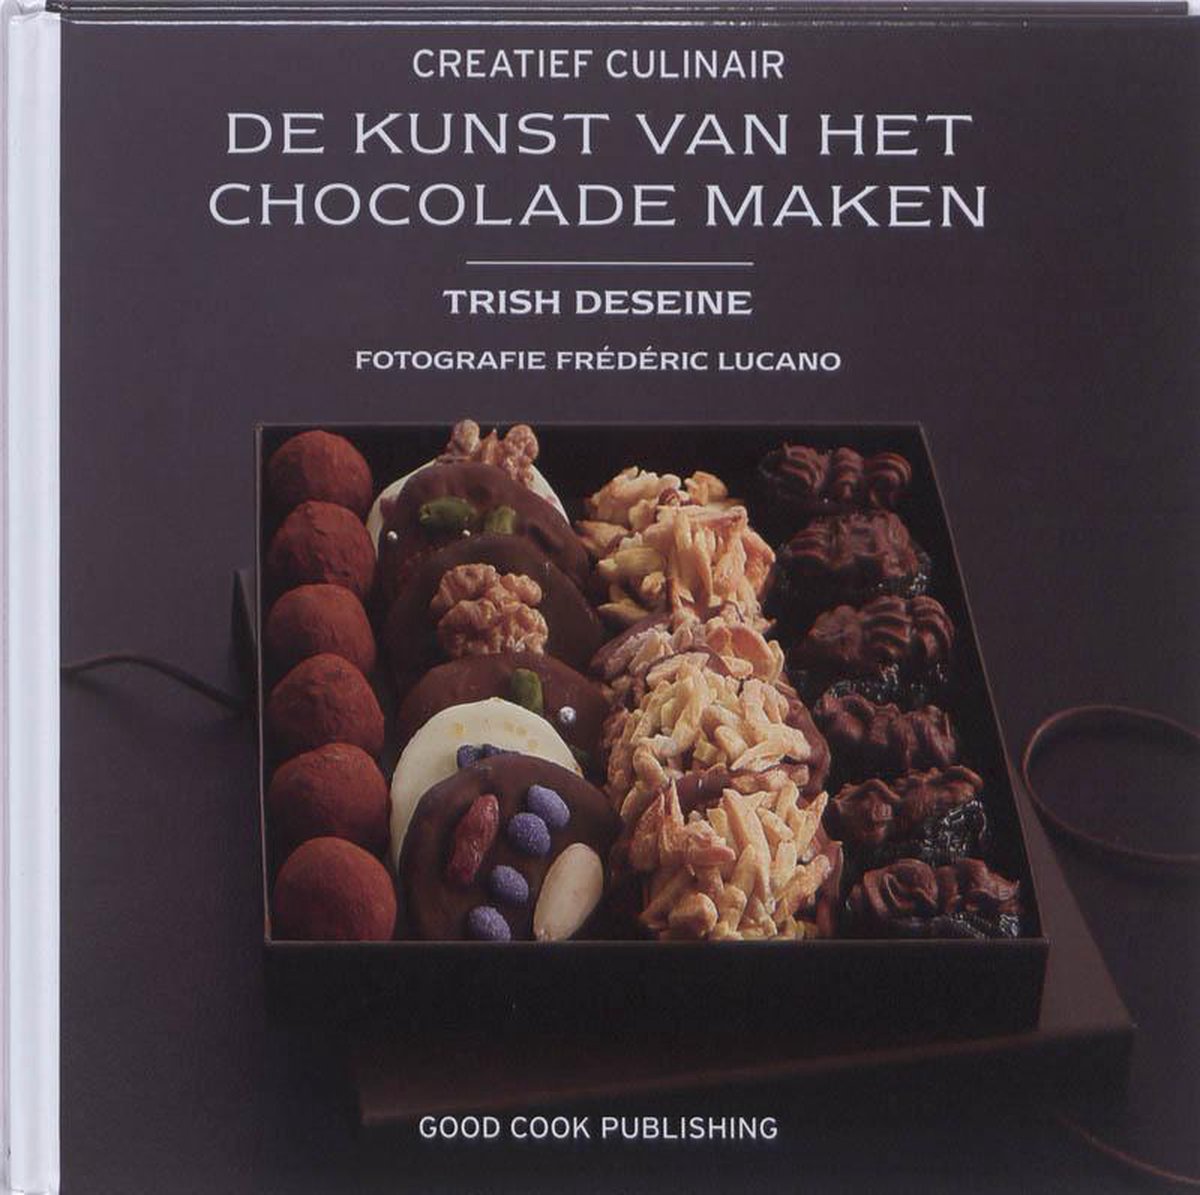 De kunst van het chocolade maken / Creatief Culinair